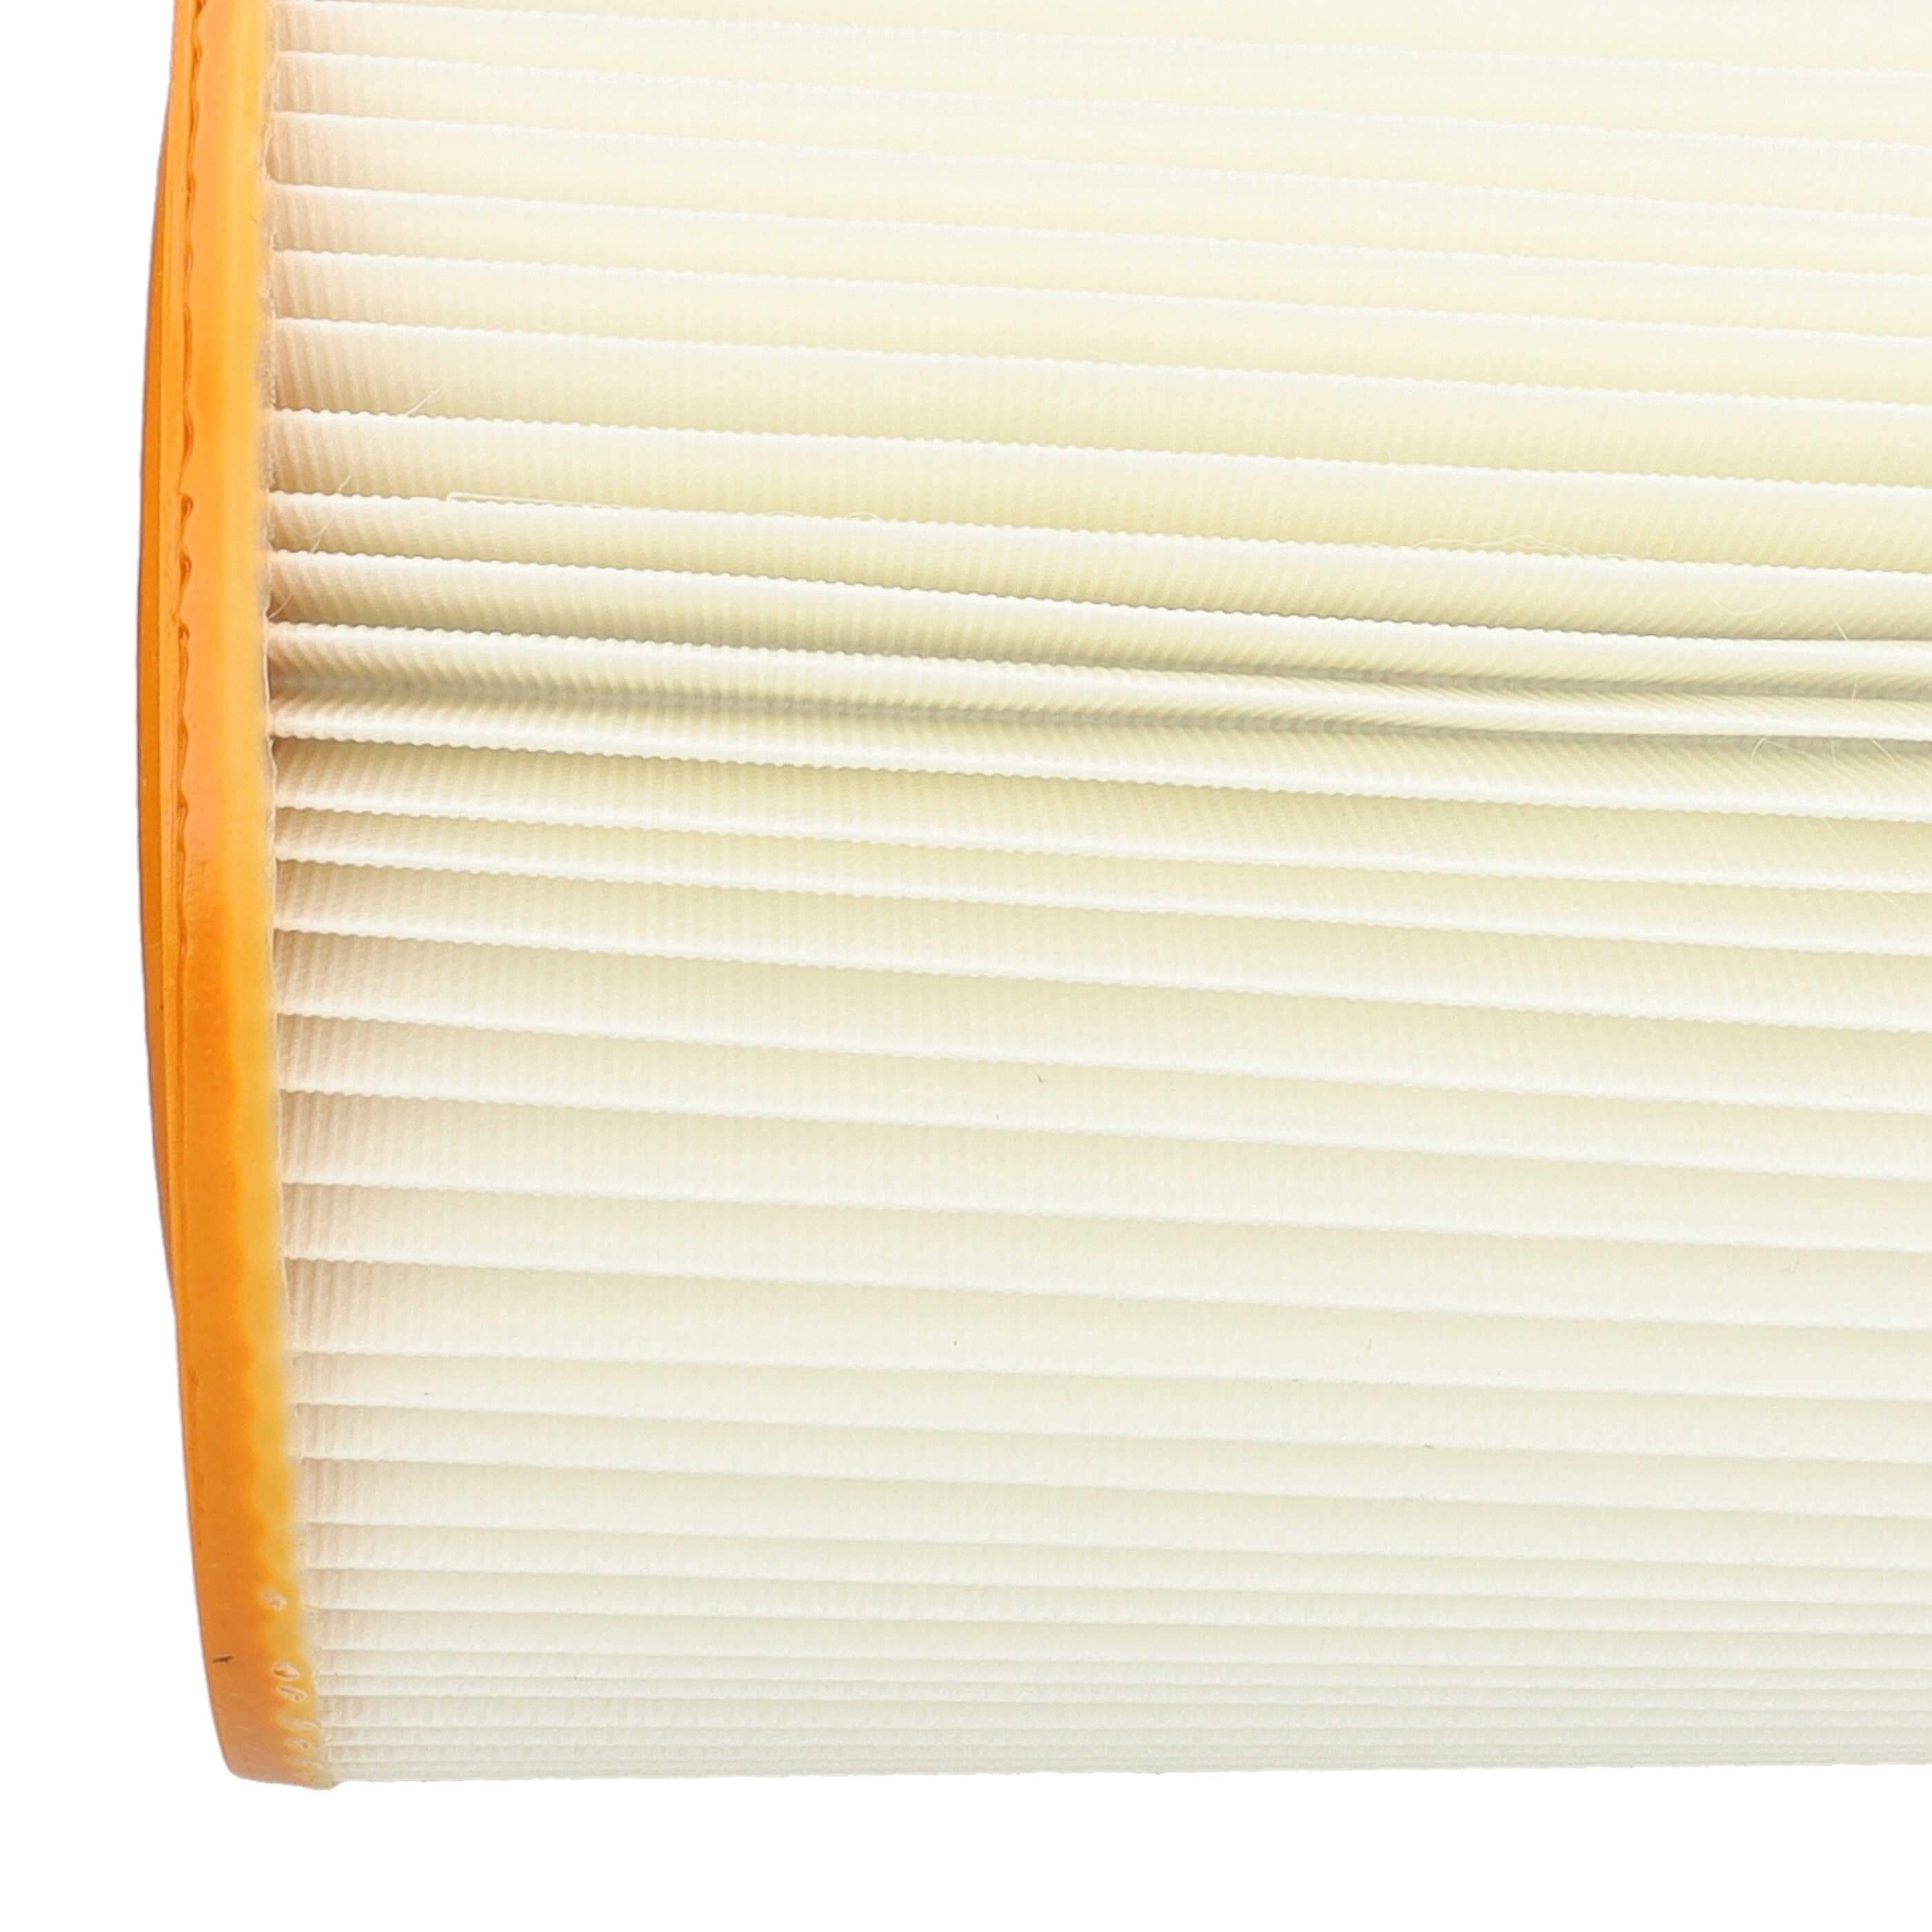 Filtr do odkurzacza Allaway zamiennik Allaway 210813, 10819, 10813 - filtr lamelowy, pomarańczowy / biały